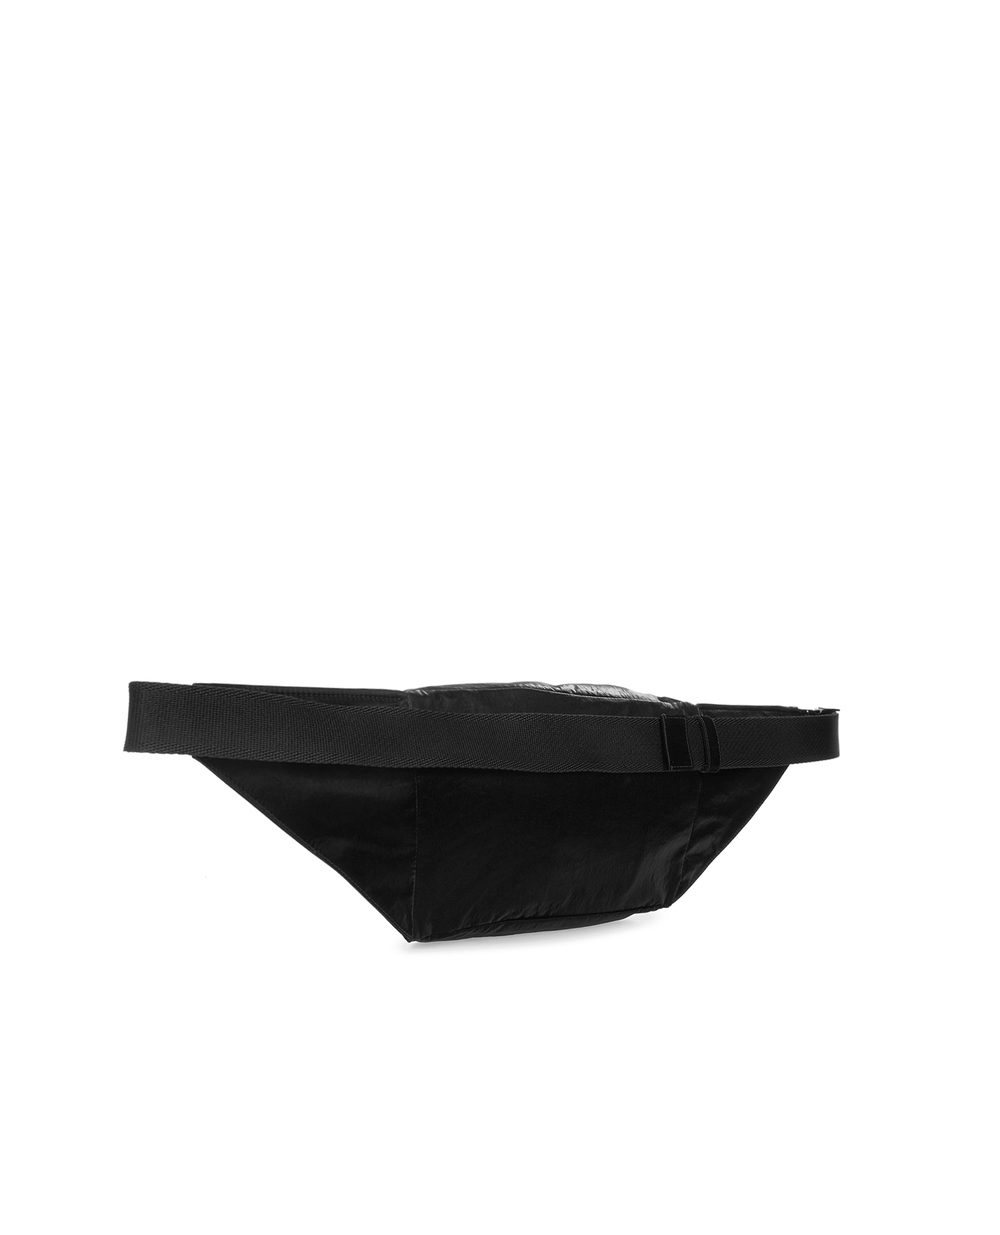 Поясная сумка Dolce&Gabbana BM1956-AO243, черный цвет • Купить в интернет-магазине Kameron